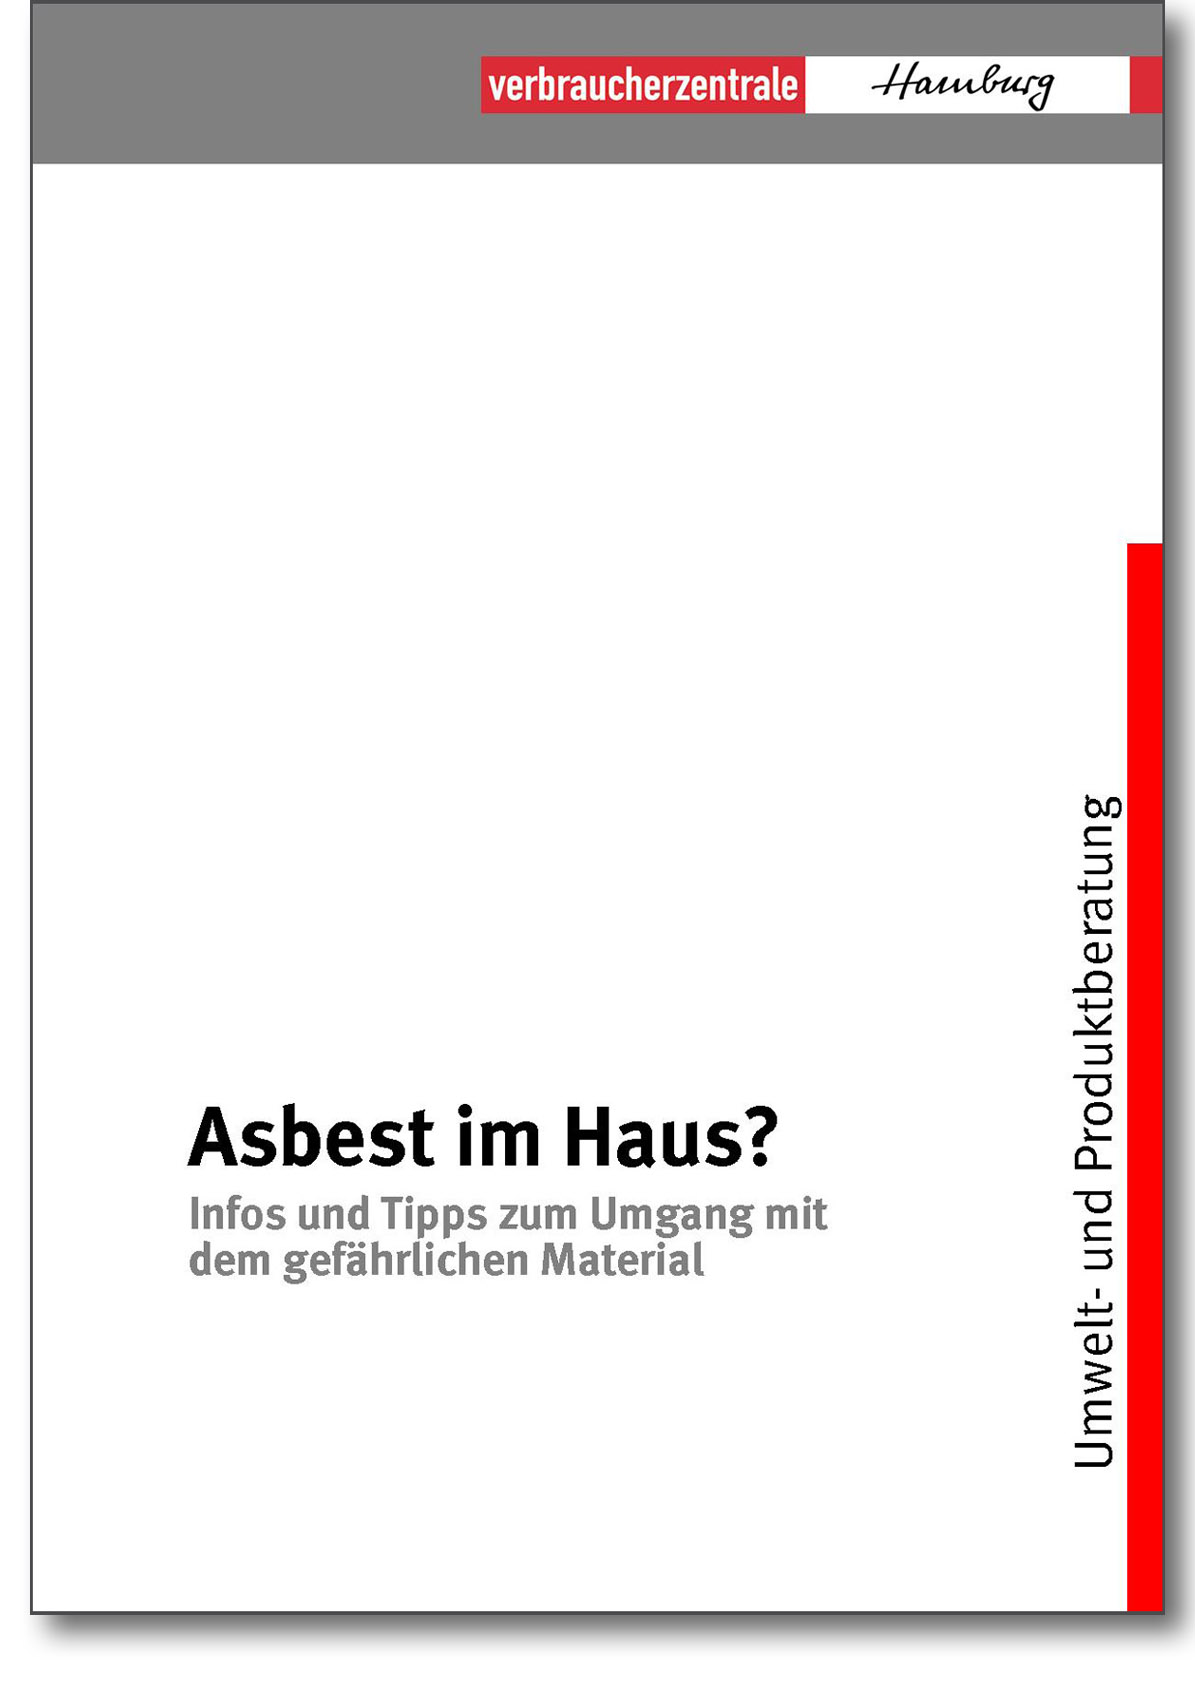 Infobroschüre - Asbest im Haus - Verbraucherzentrale